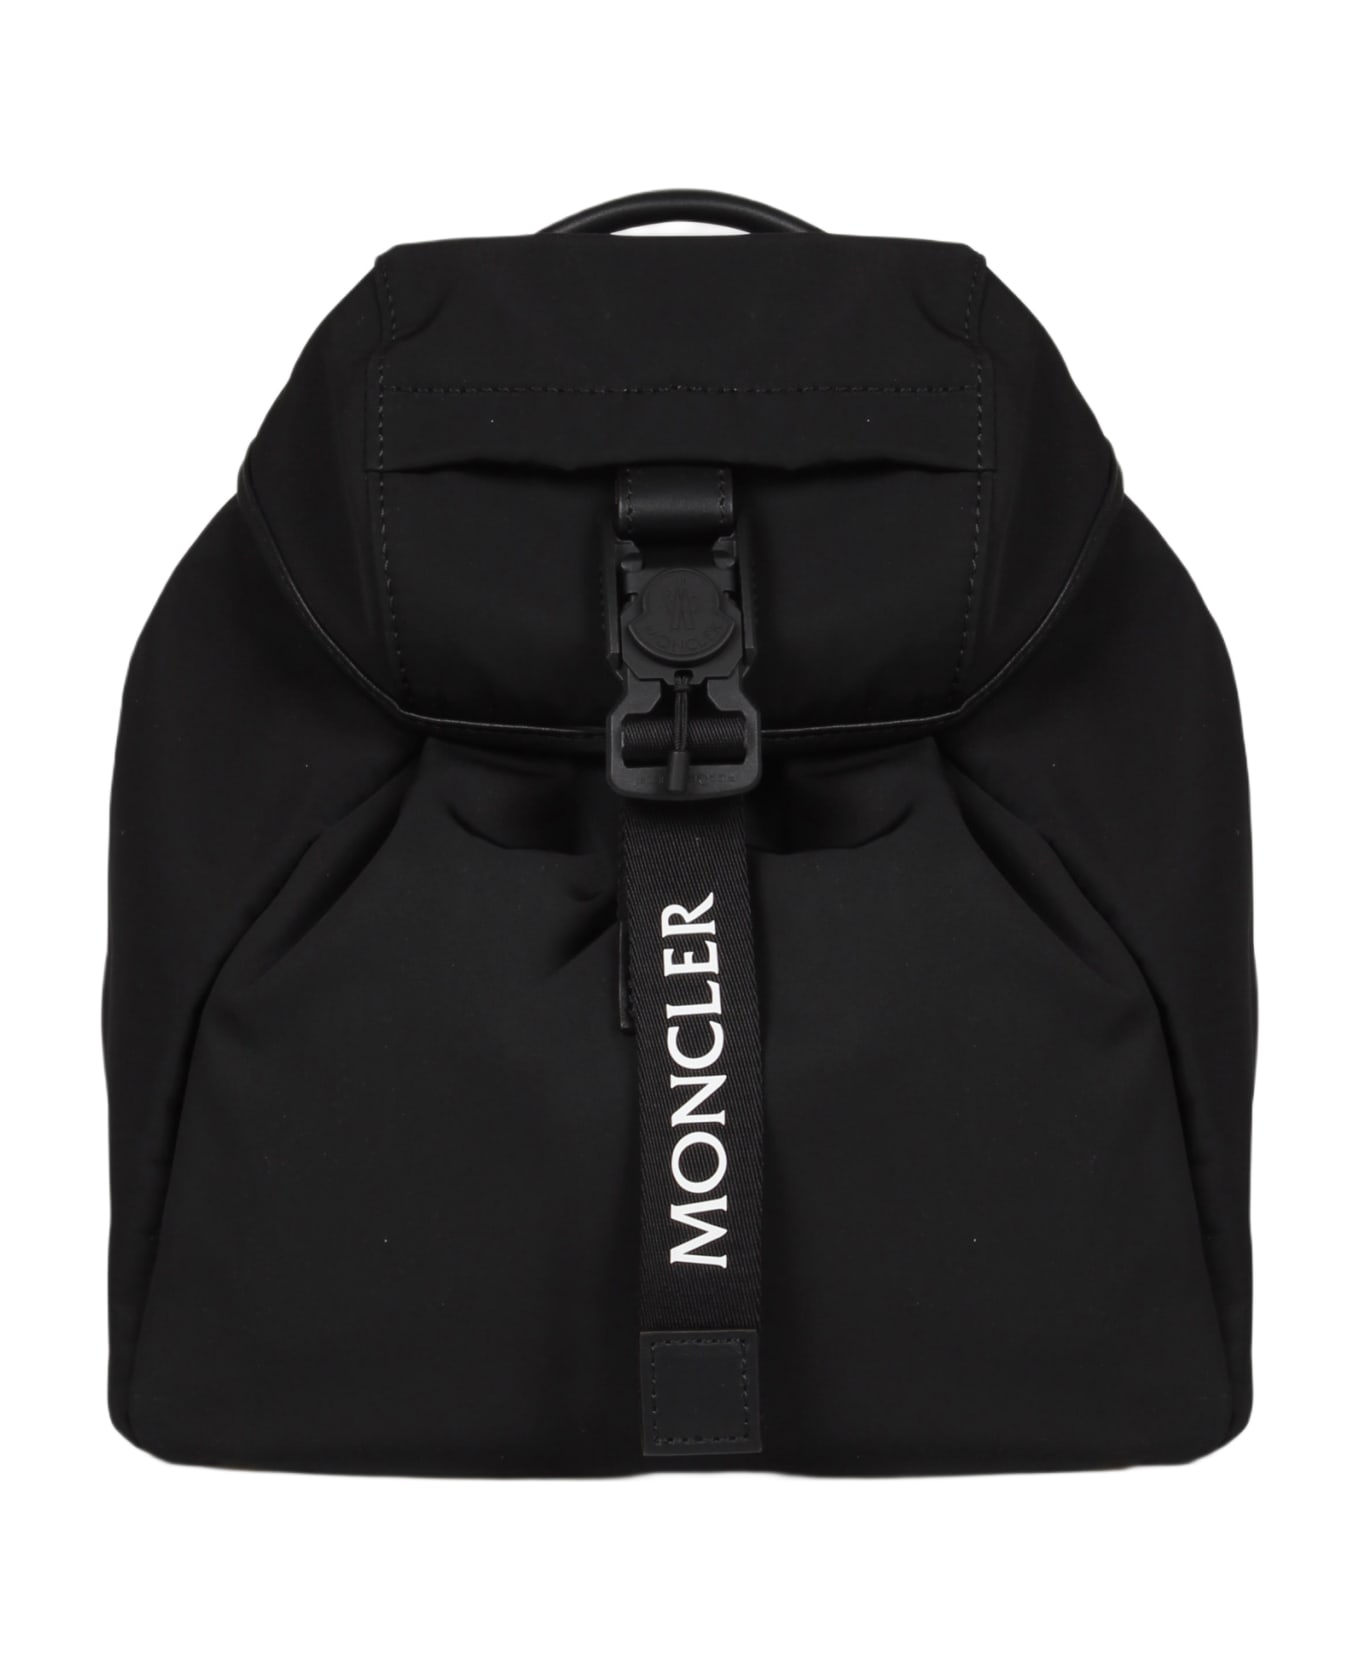 Moncler Trick Backpack - Black